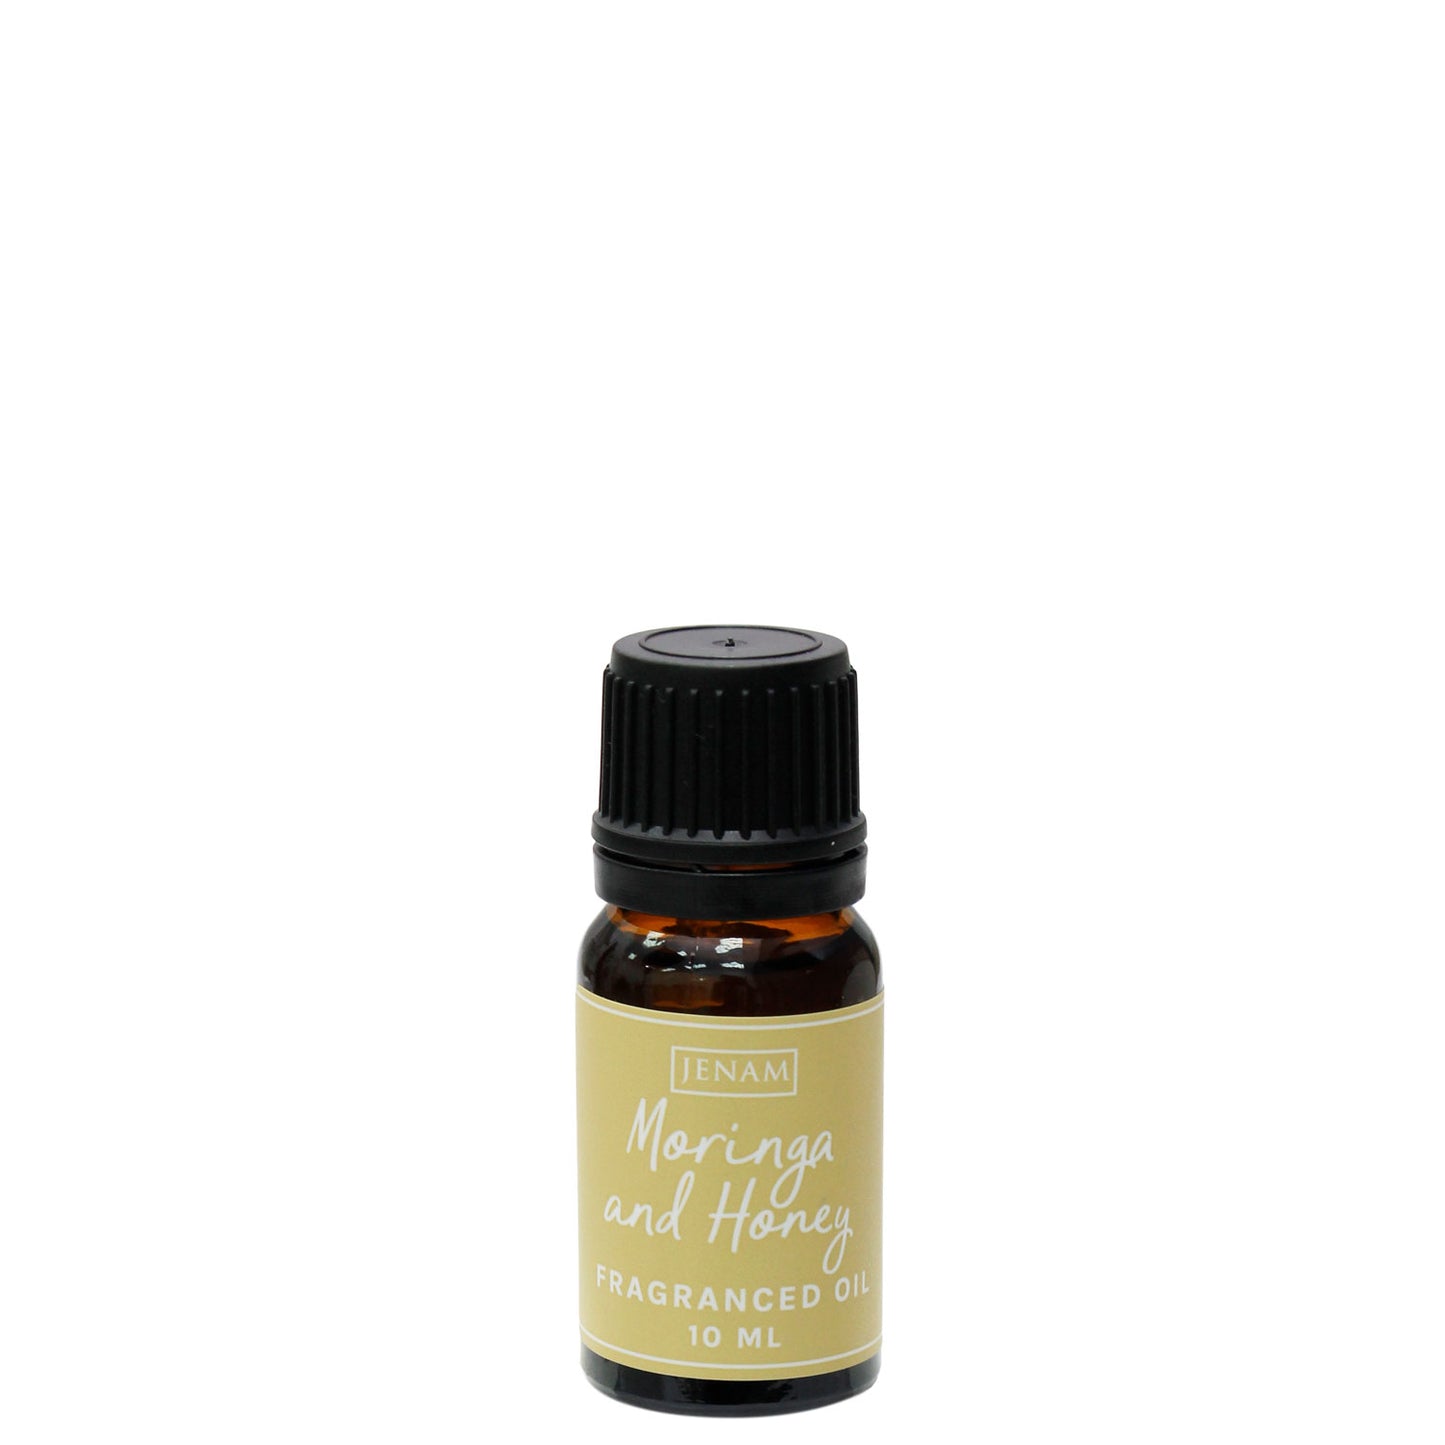 Moringa And Honey Fragranced Oil - 10 Ml